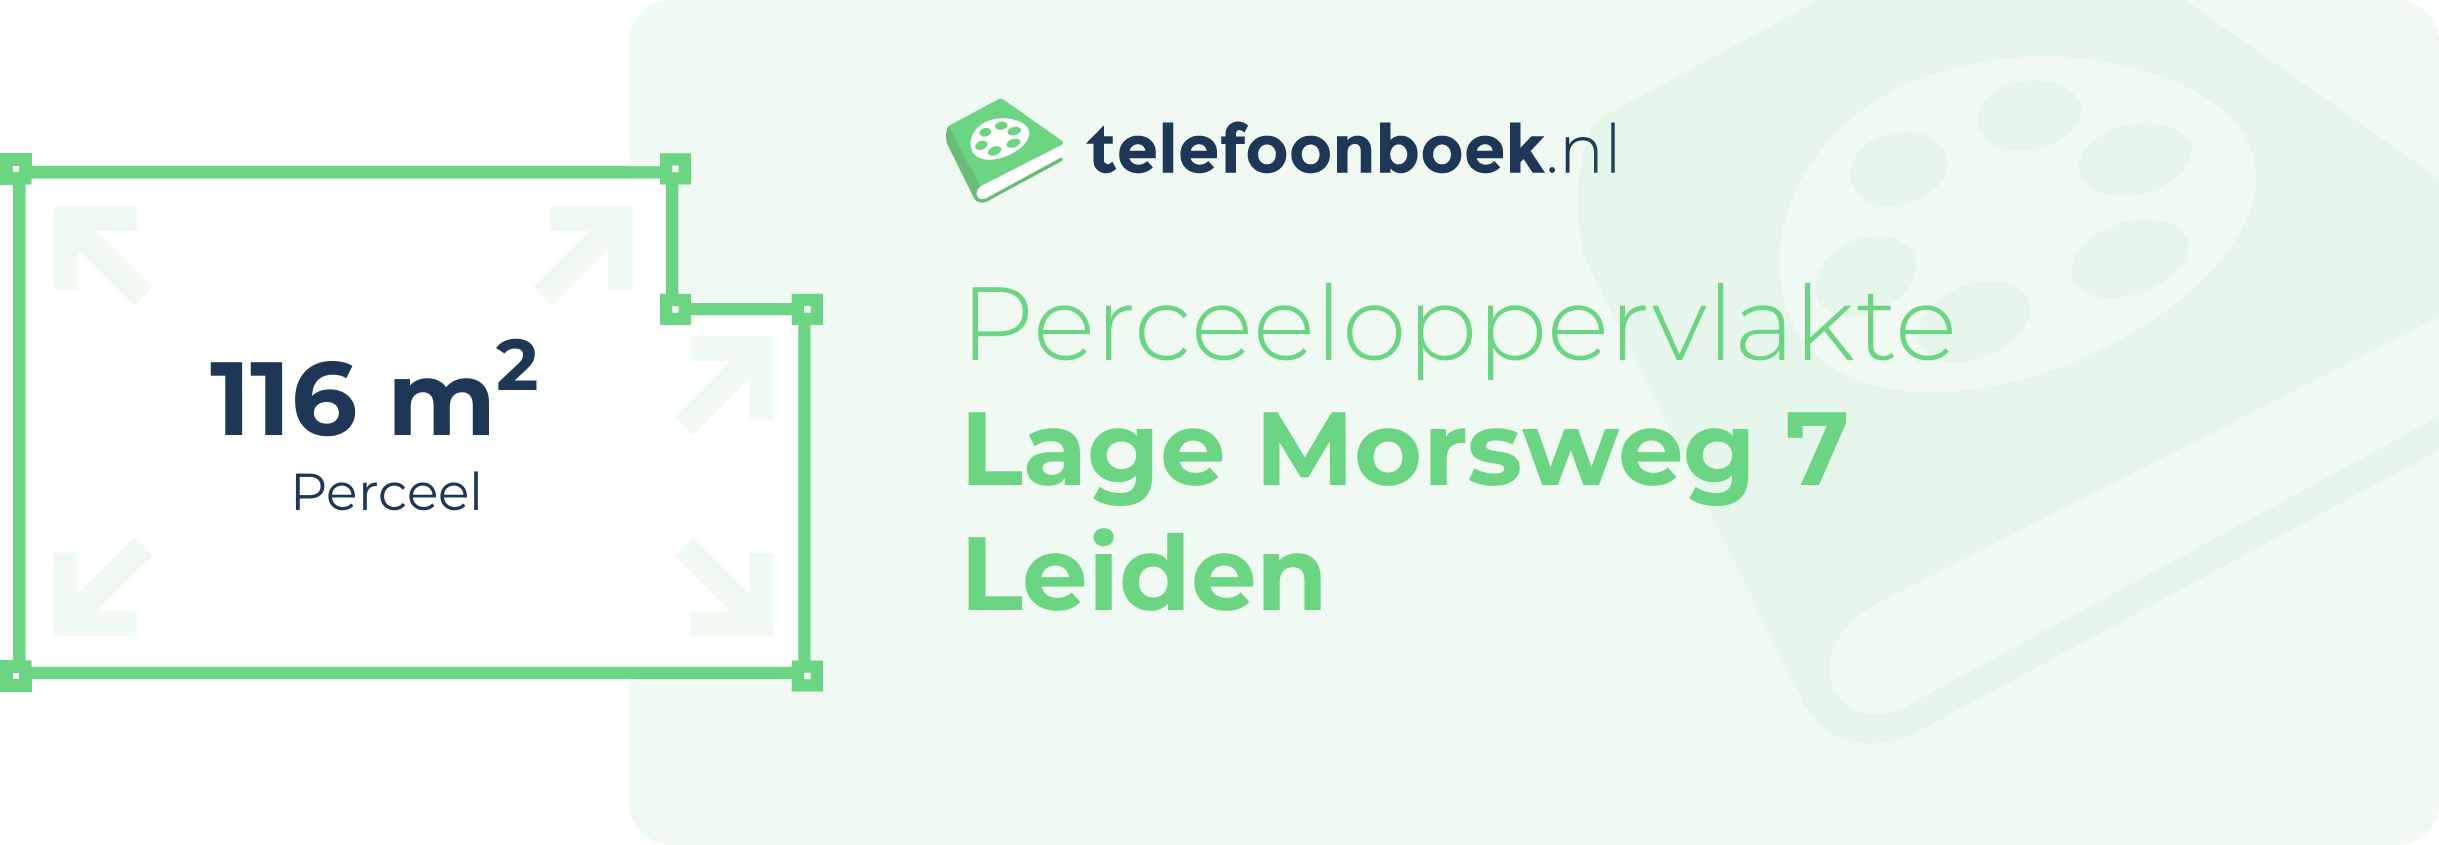 Perceeloppervlakte Lage Morsweg 7 Leiden